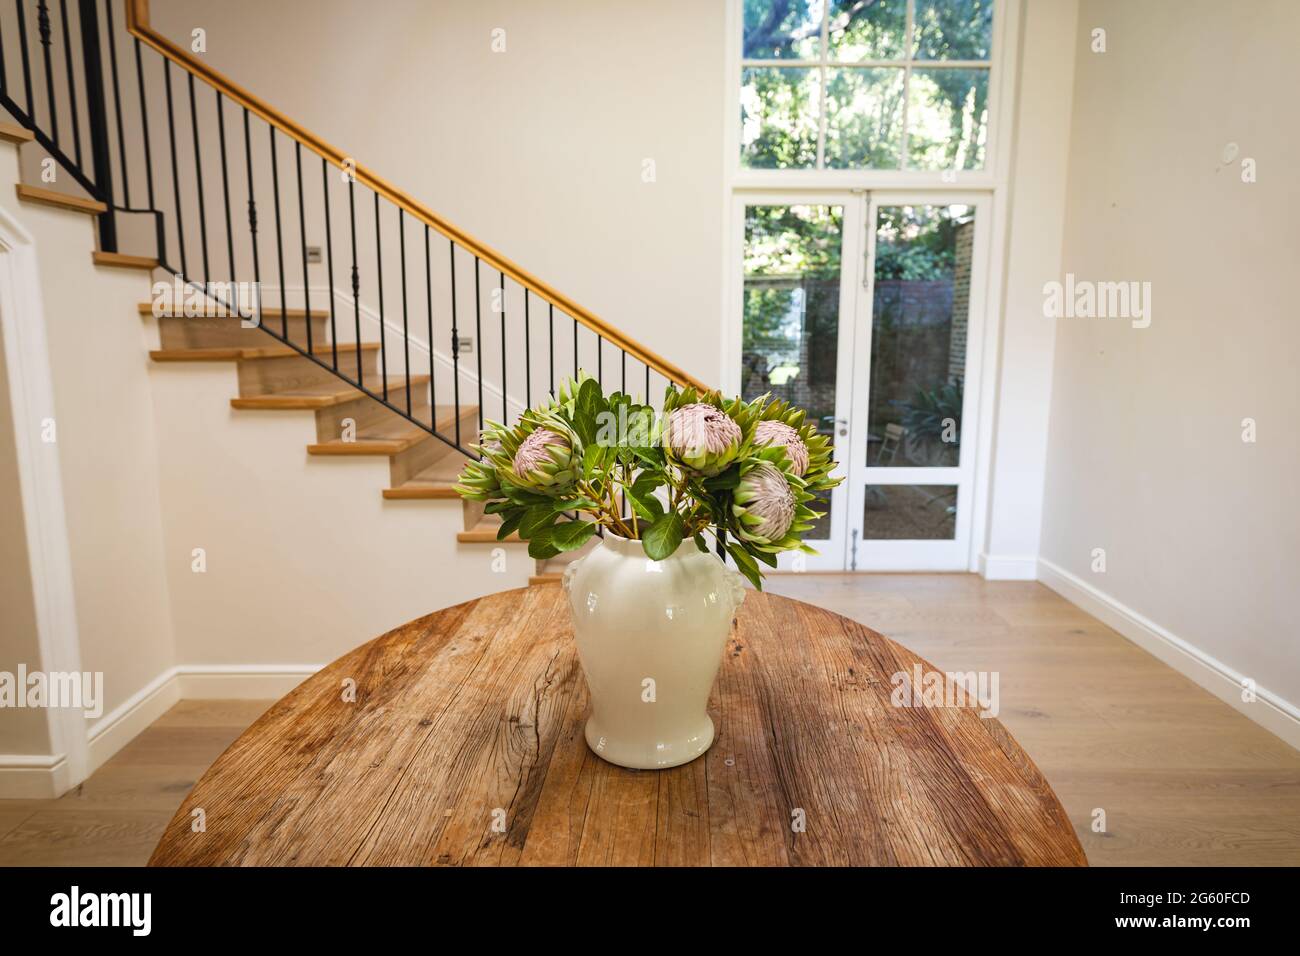 Vue générale de l'intérieur de la maison avec table et vase avec fleurs dans le grand couloir et escalier Banque D'Images